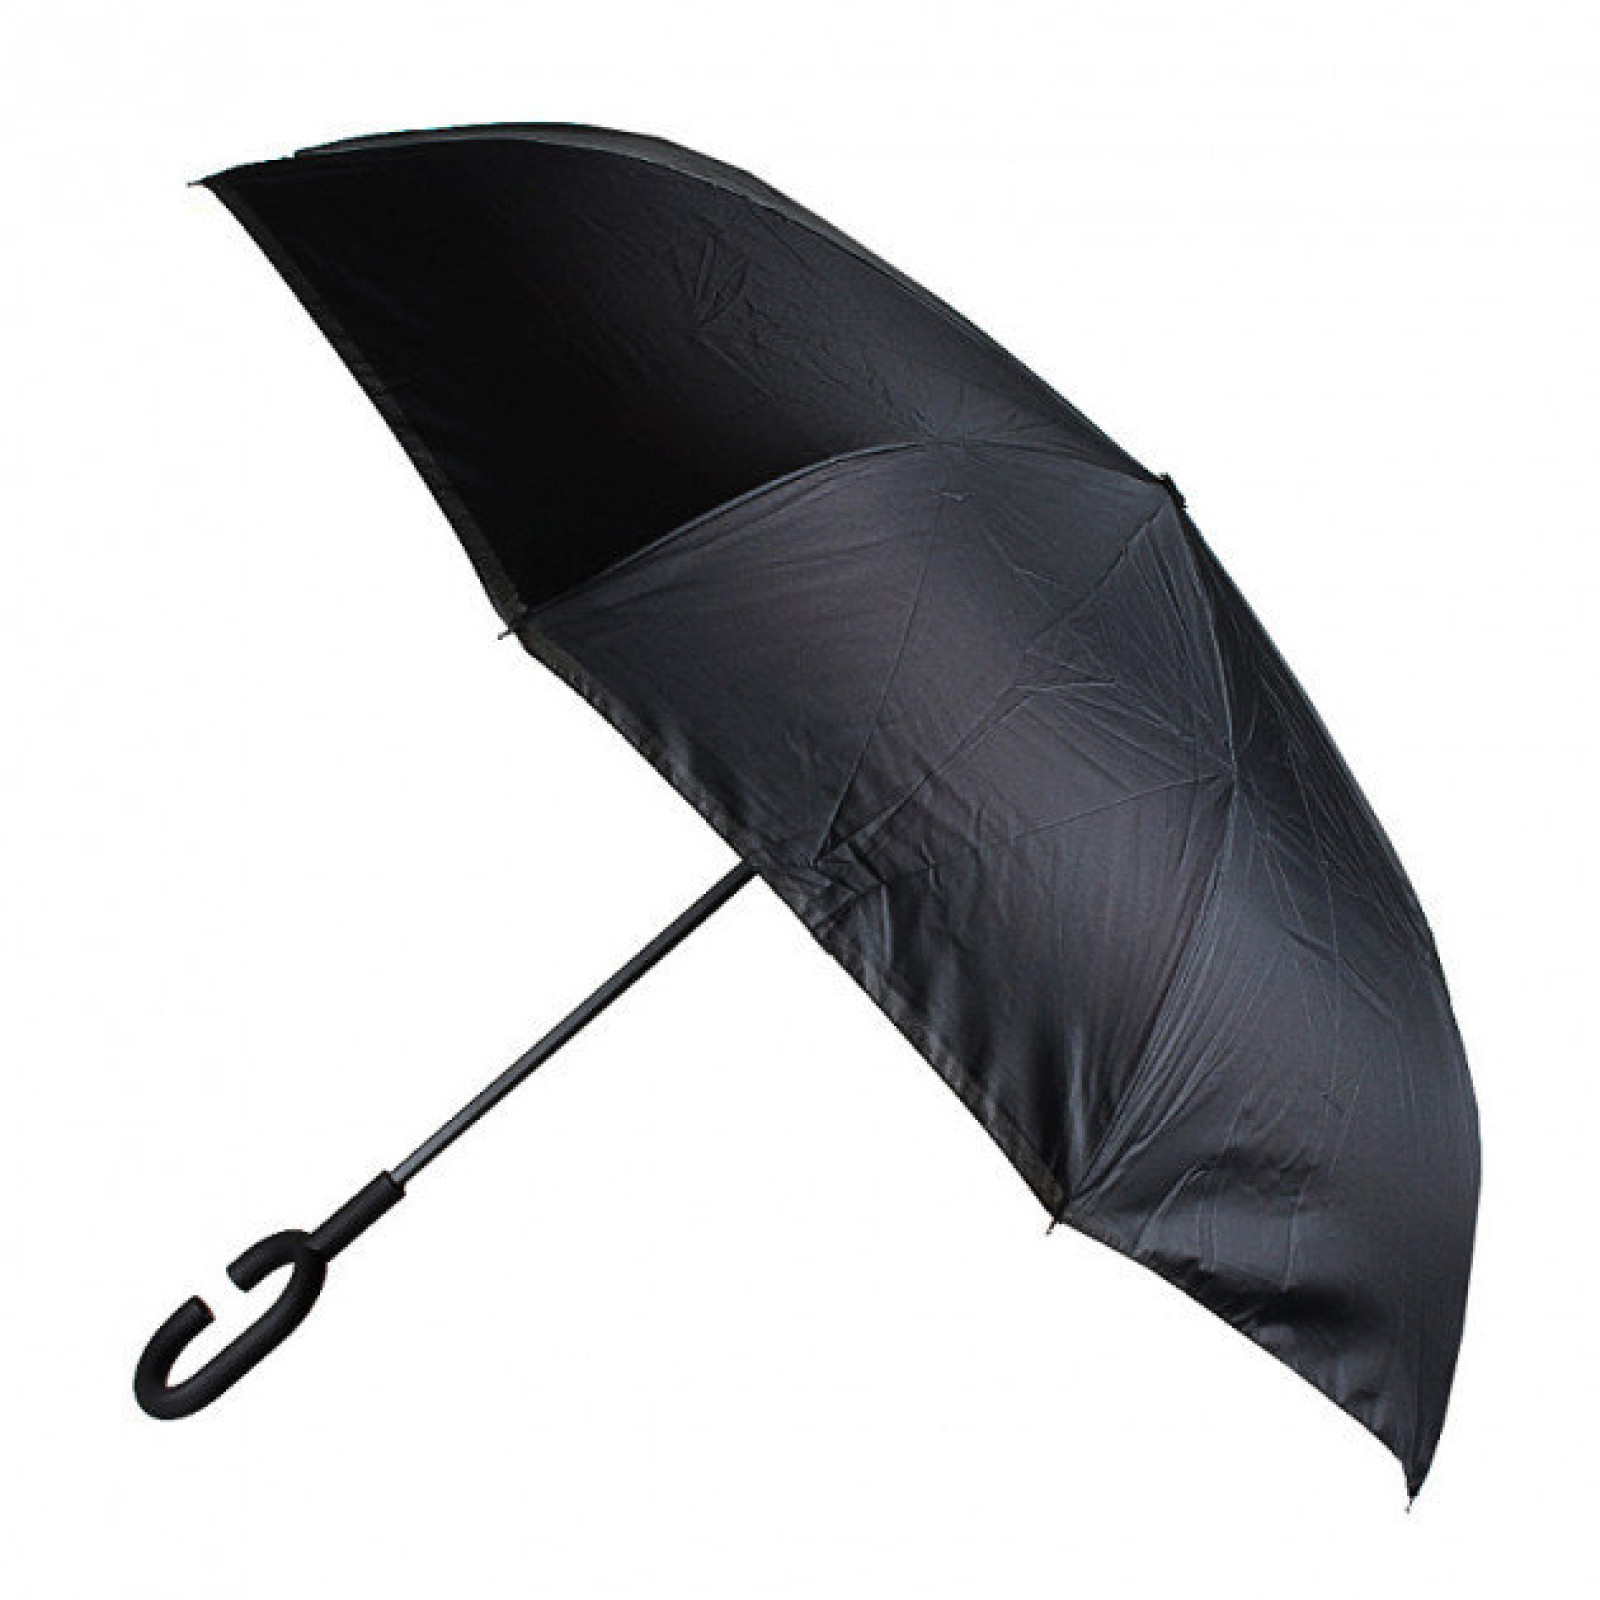 Зонт обратного сложения, антизонт, умный зонт, зонт наоборот Up Brella Малиновый 150995